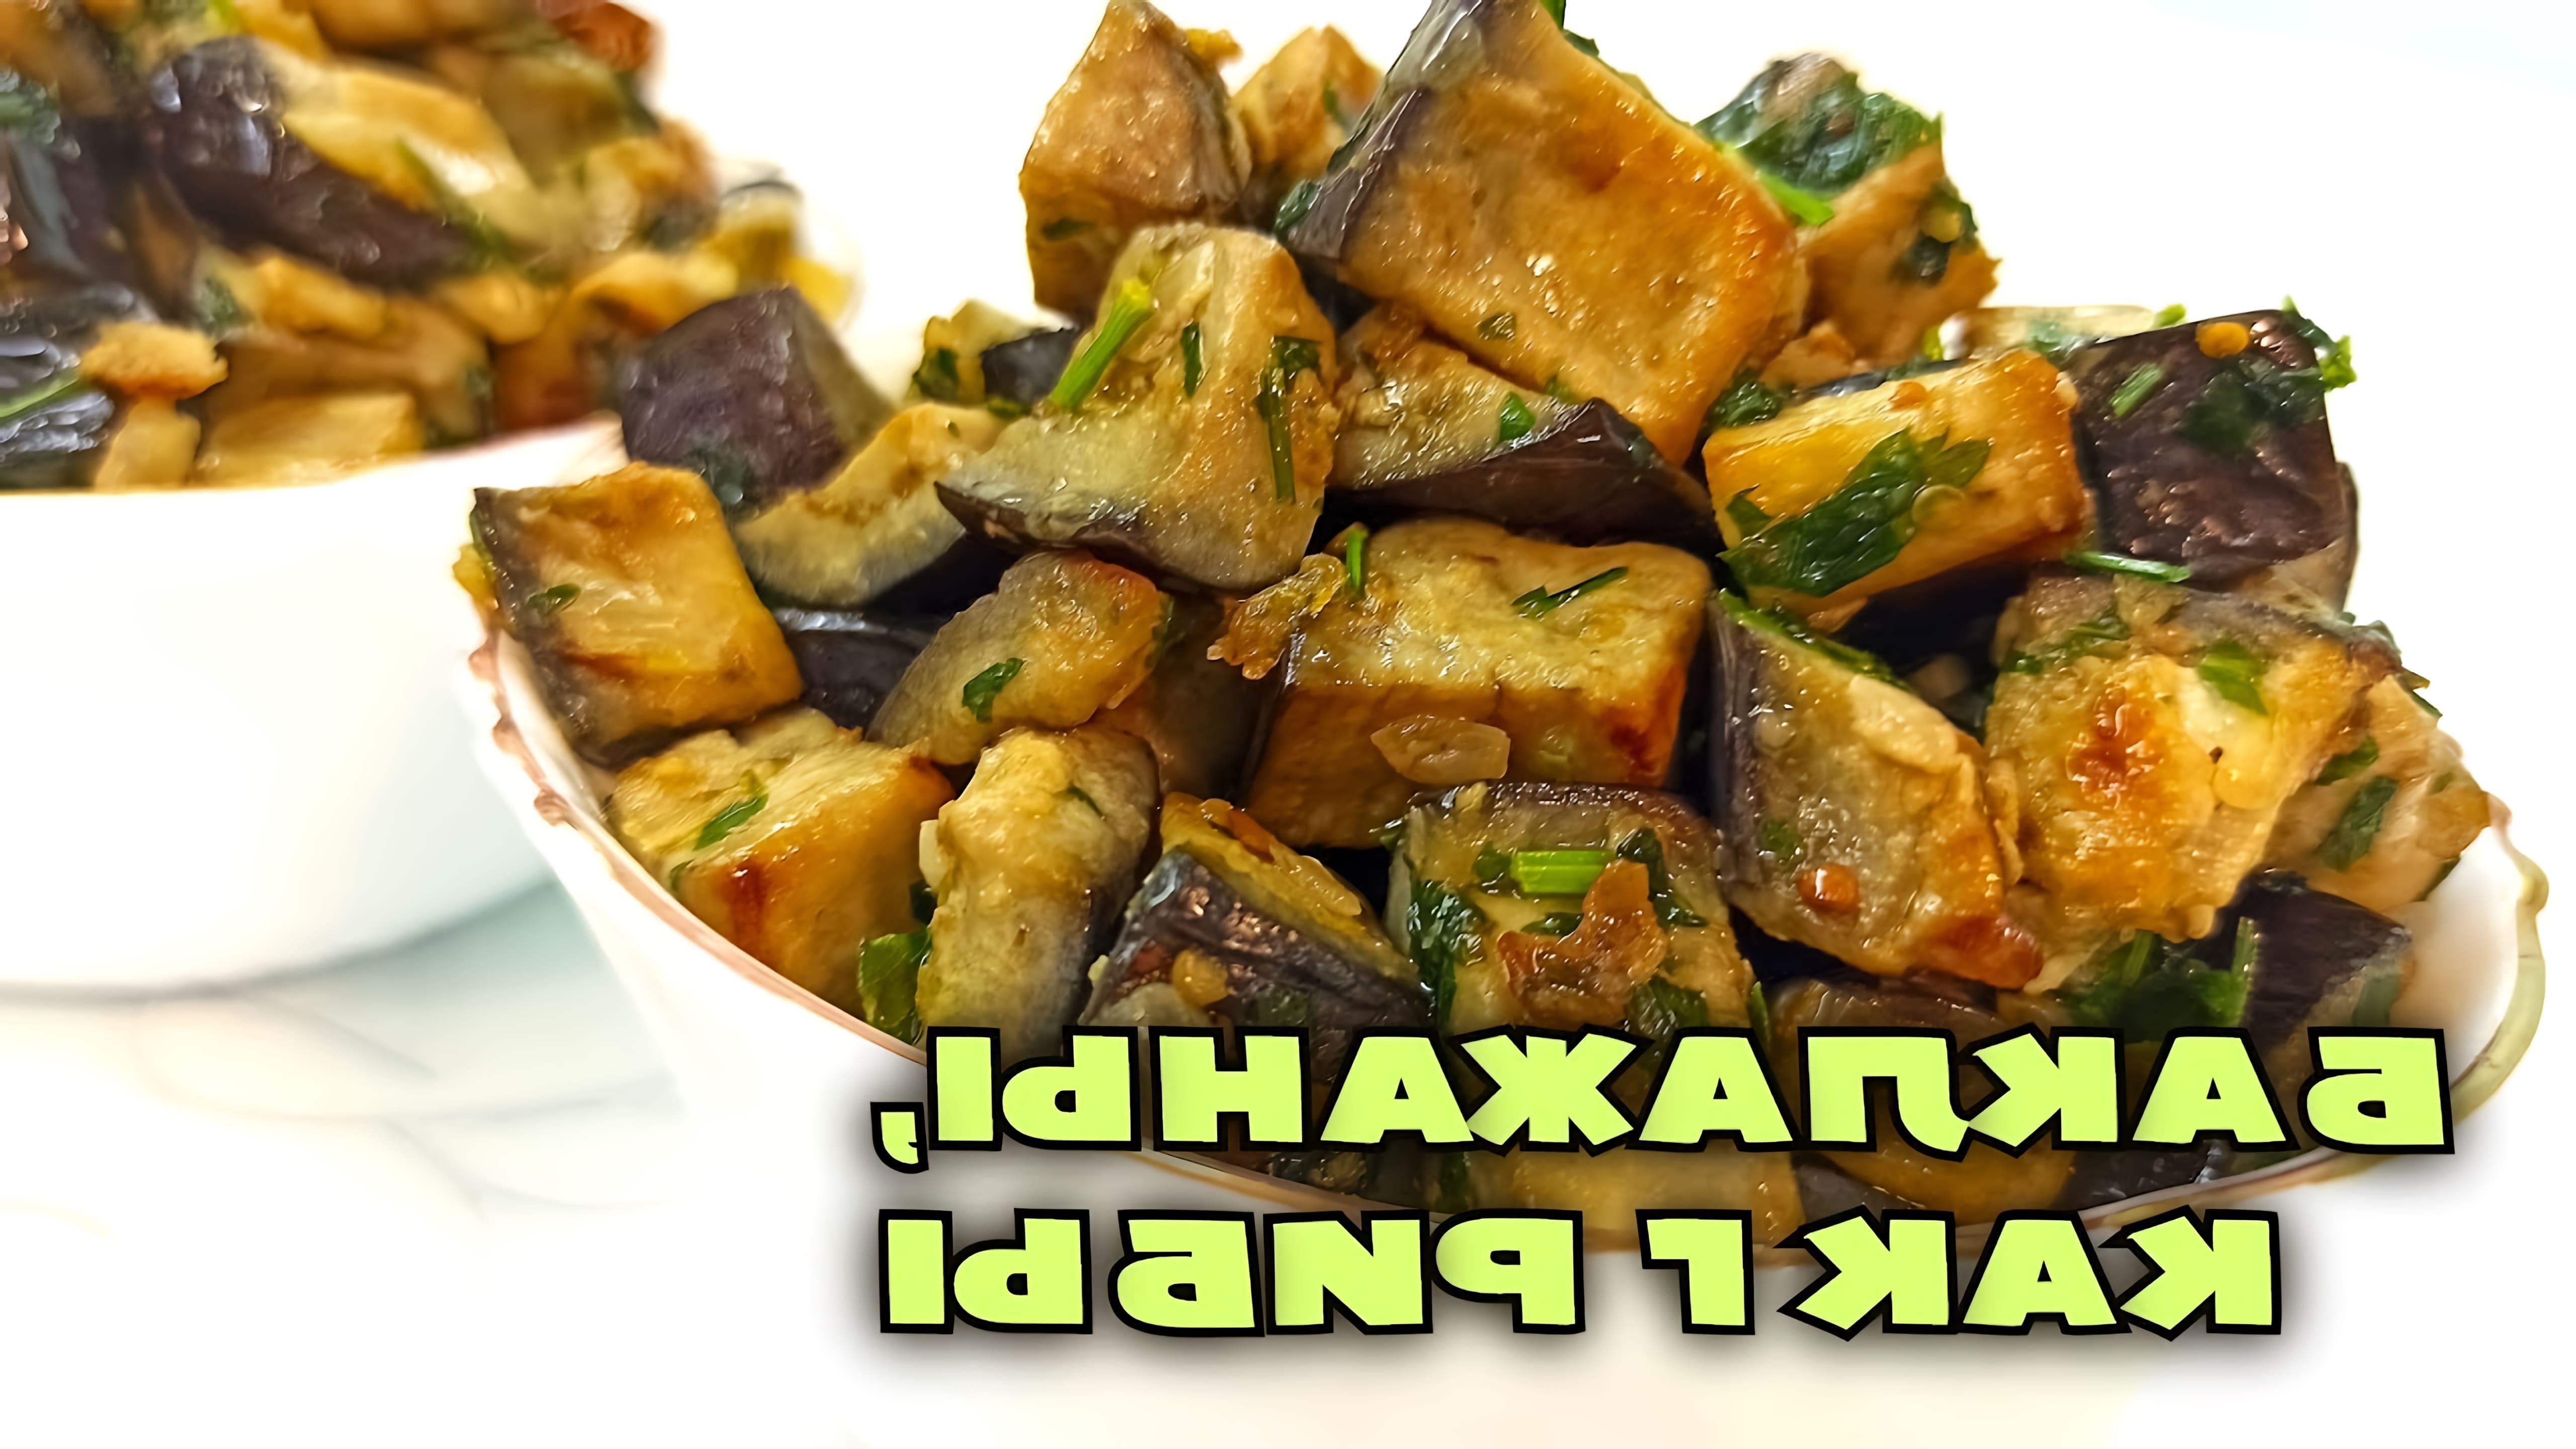 В этом видео демонстрируется рецепт приготовления закуски из баклажанов, которая по вкусу напоминает грибы